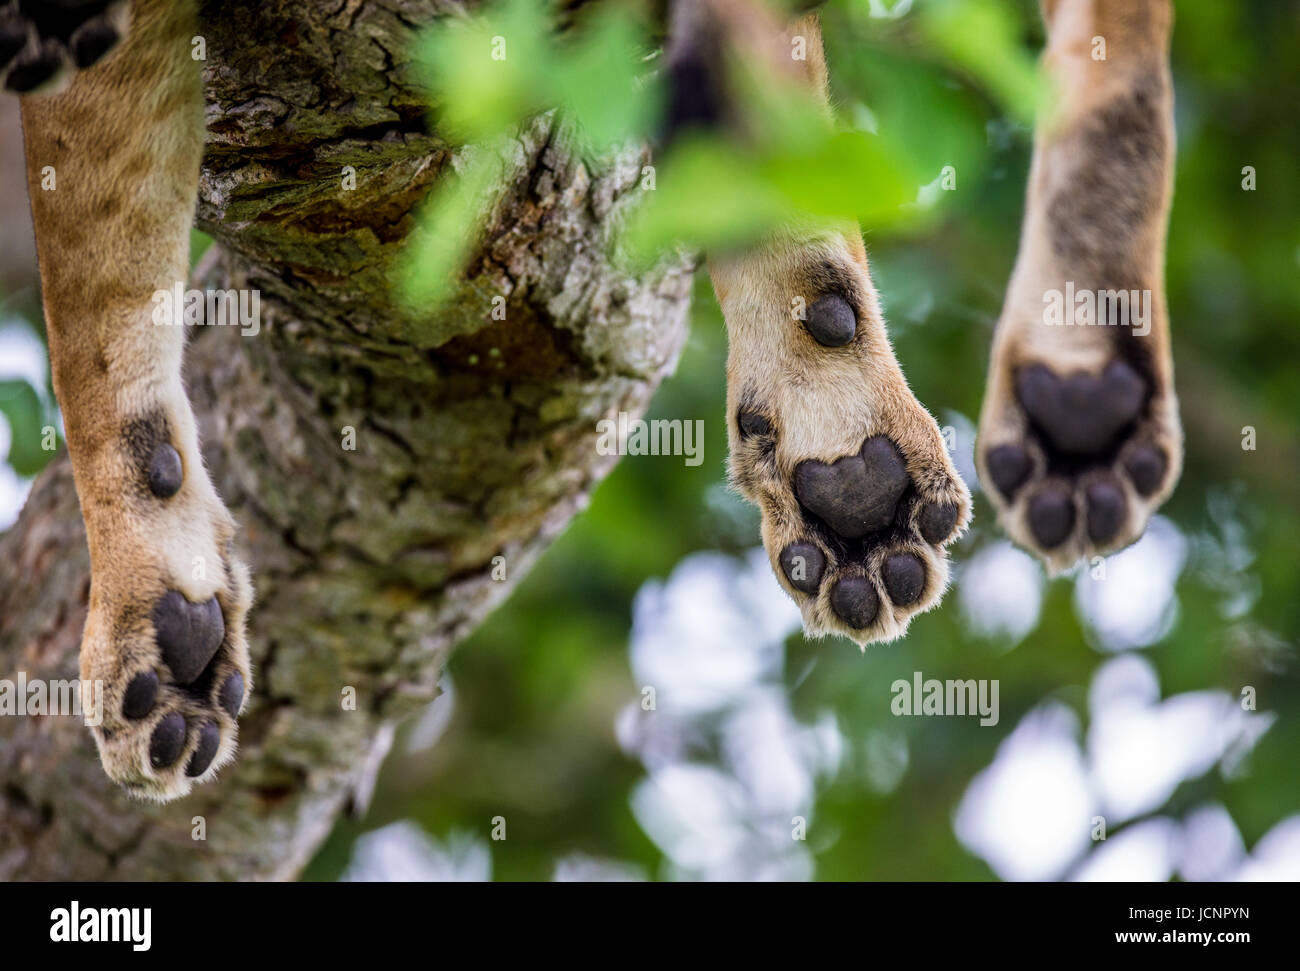 Pattes de lionne, qui repose sur l'arbre. Gros plan. Ouganda. Afrique de l'est. Banque D'Images